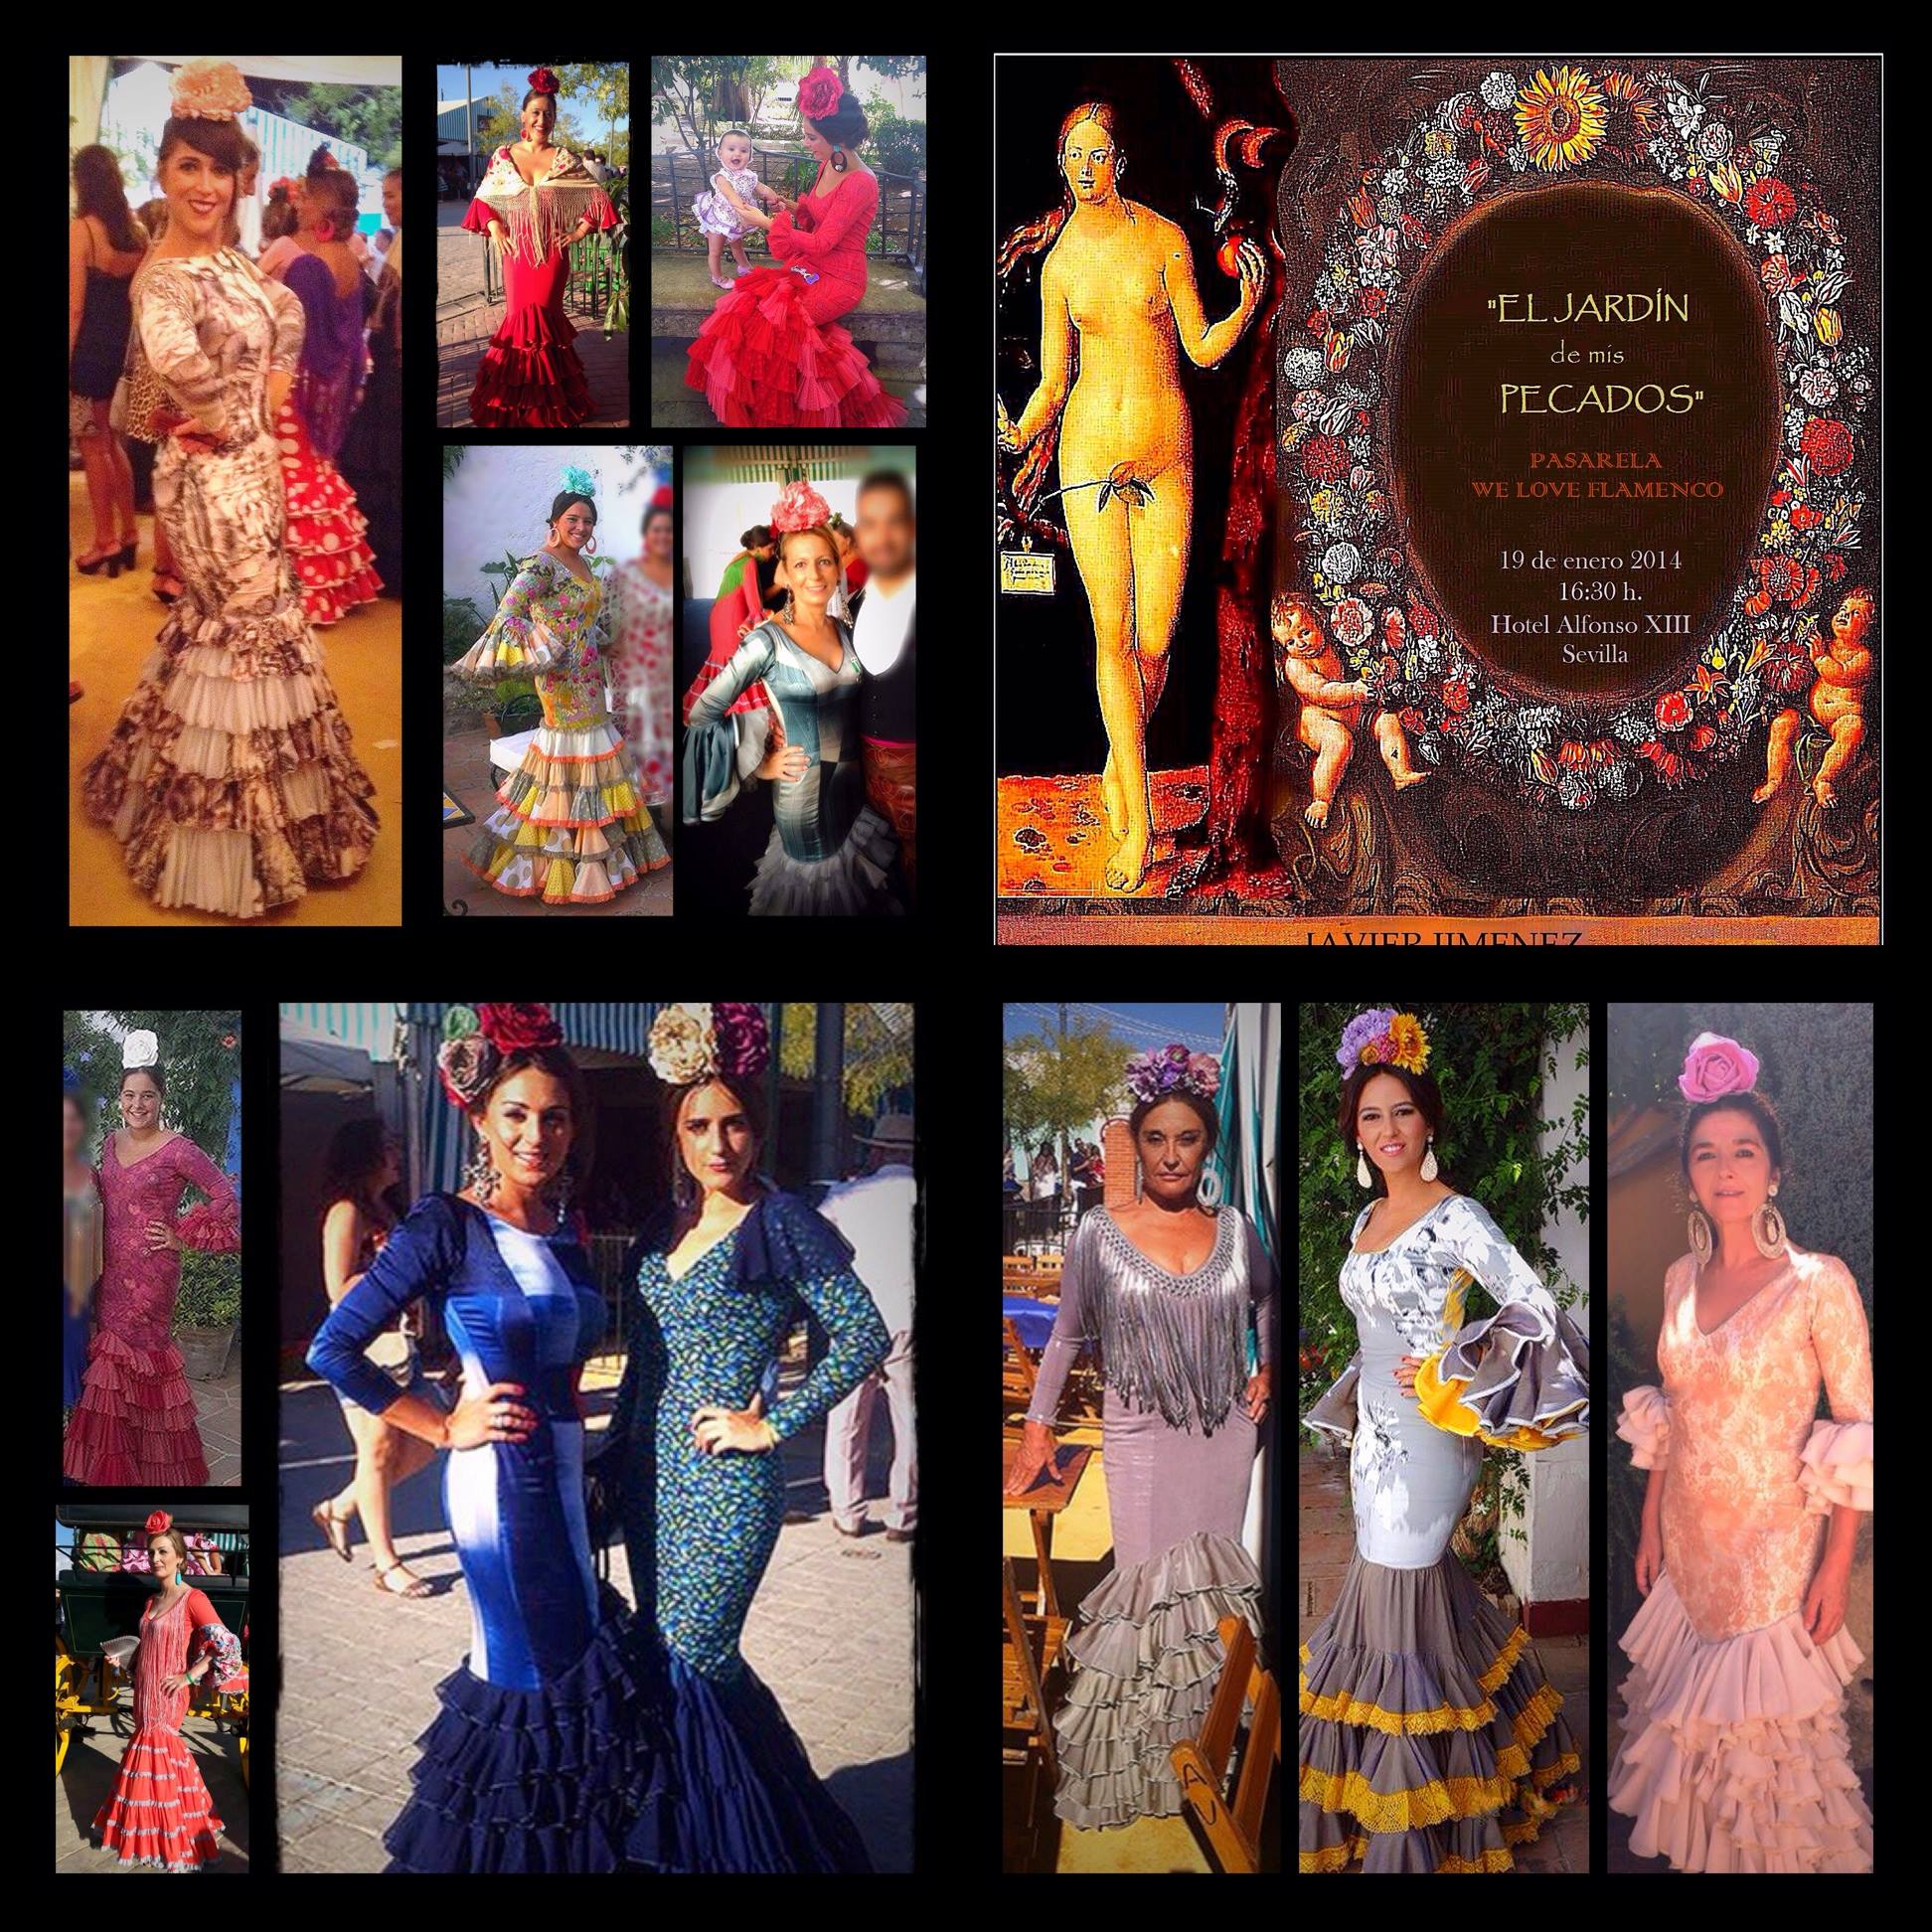 La moda flamenca que nos gusta ver (a los blogueros)